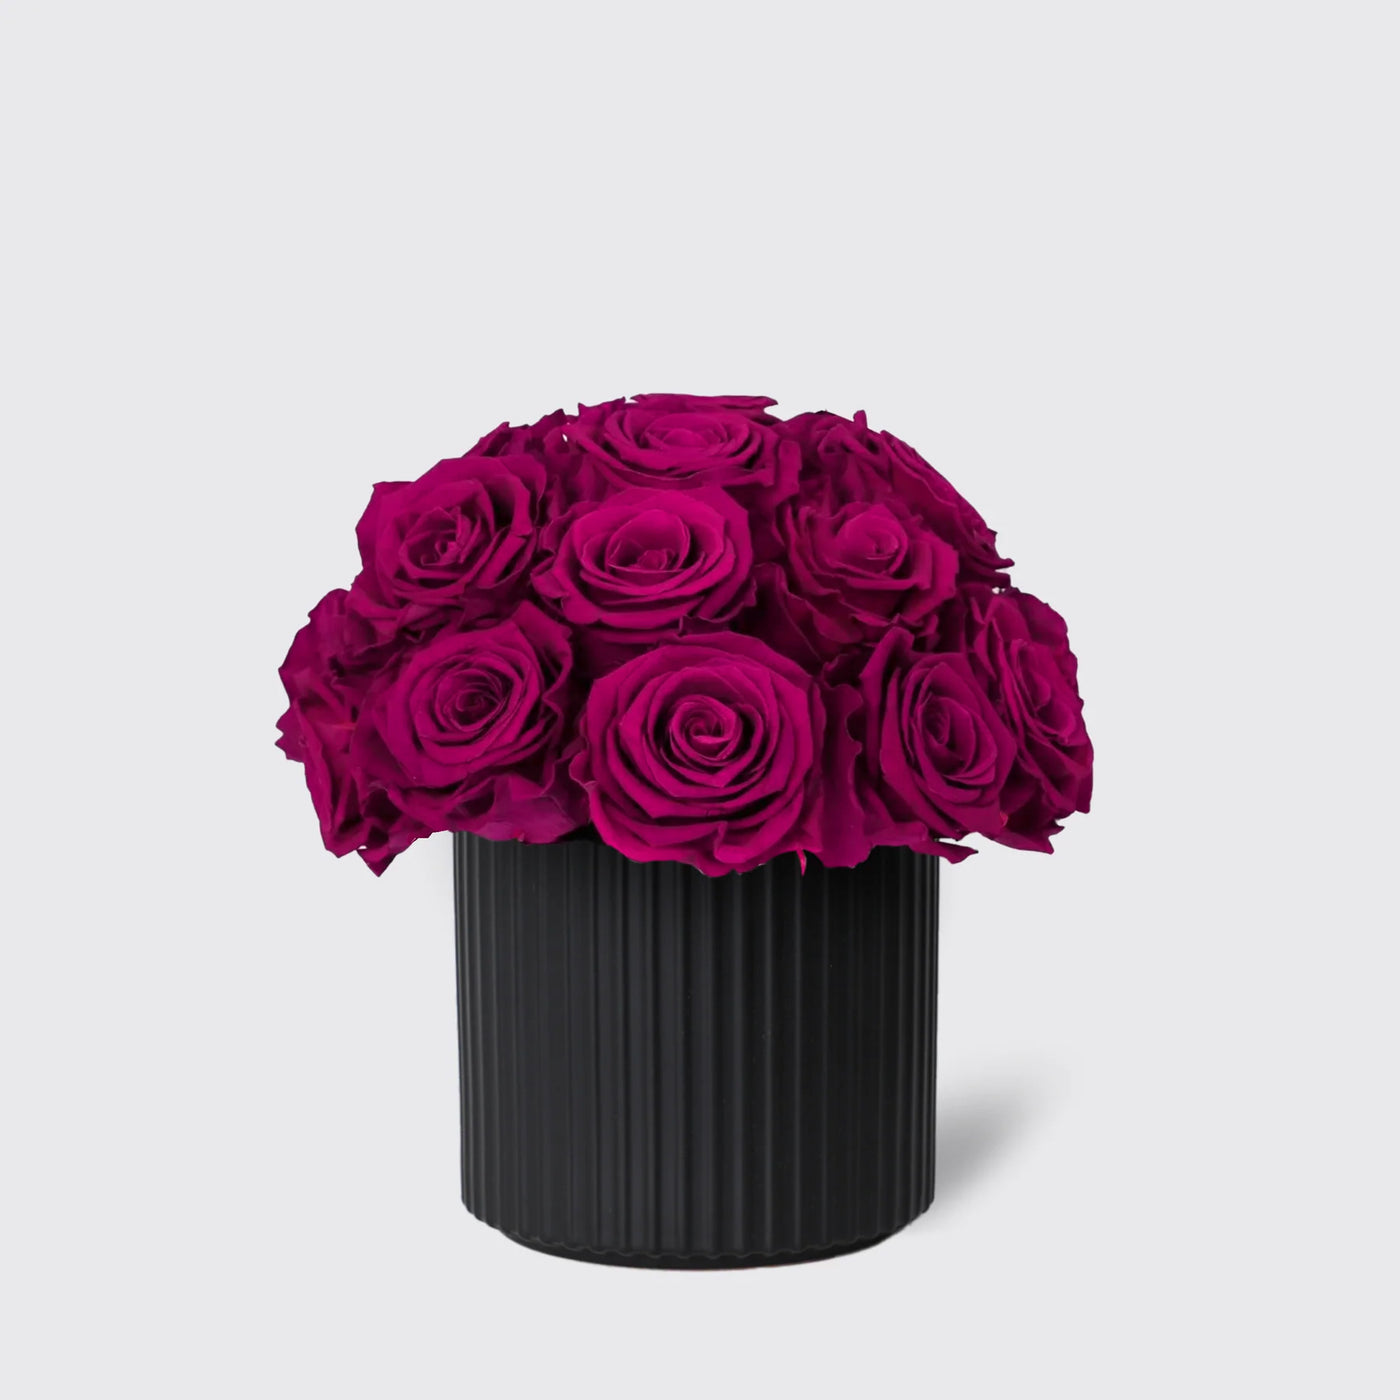 Infinity Royal Purple in Vase - Infinity Roses